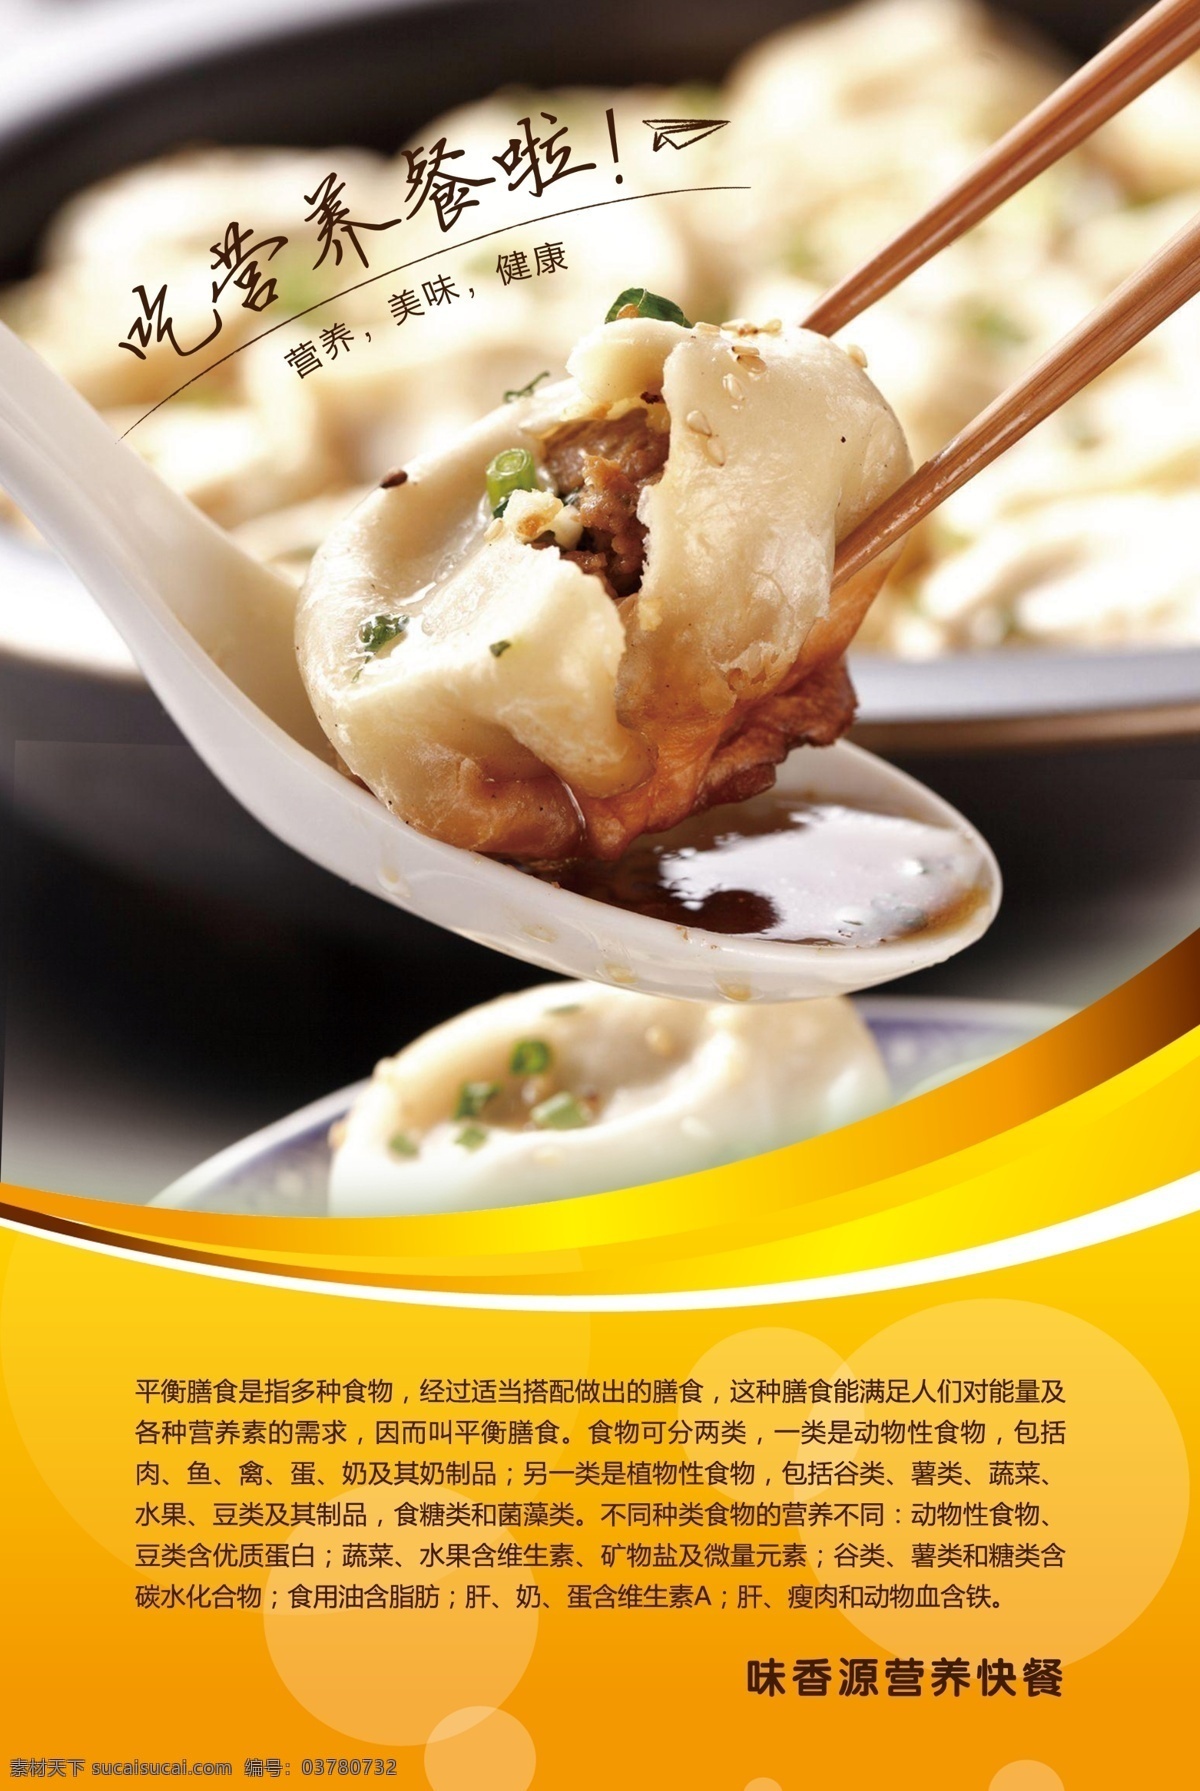 美食海报 美食 海报 饭店 餐厅 水饺 筷子设计